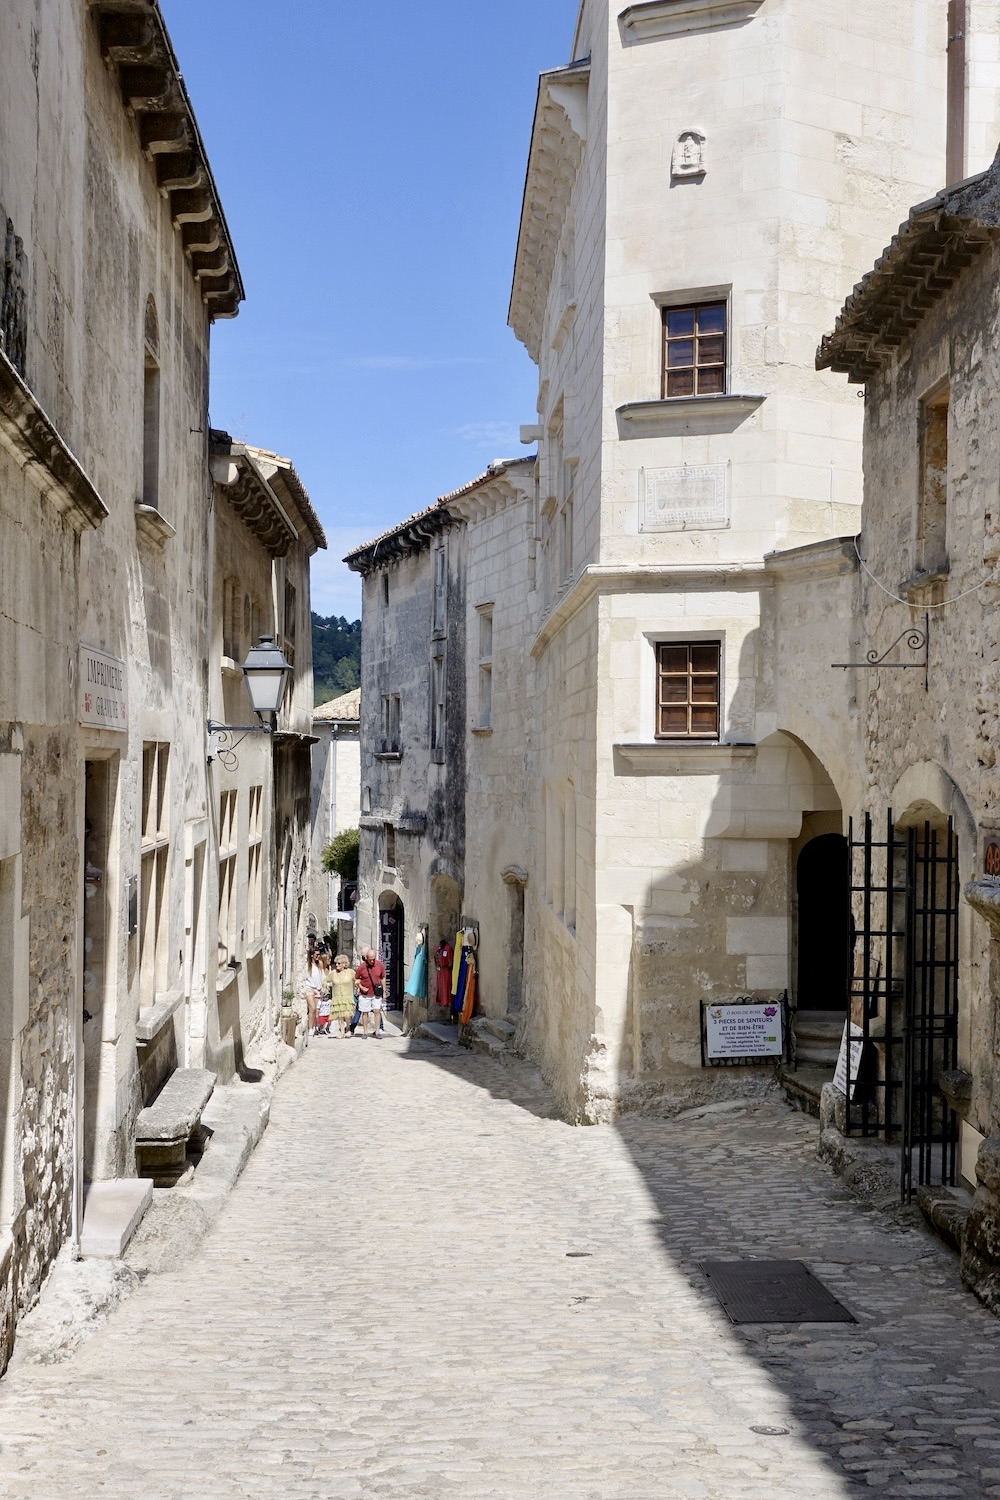 Les Baux-de-Provence, Provence/France